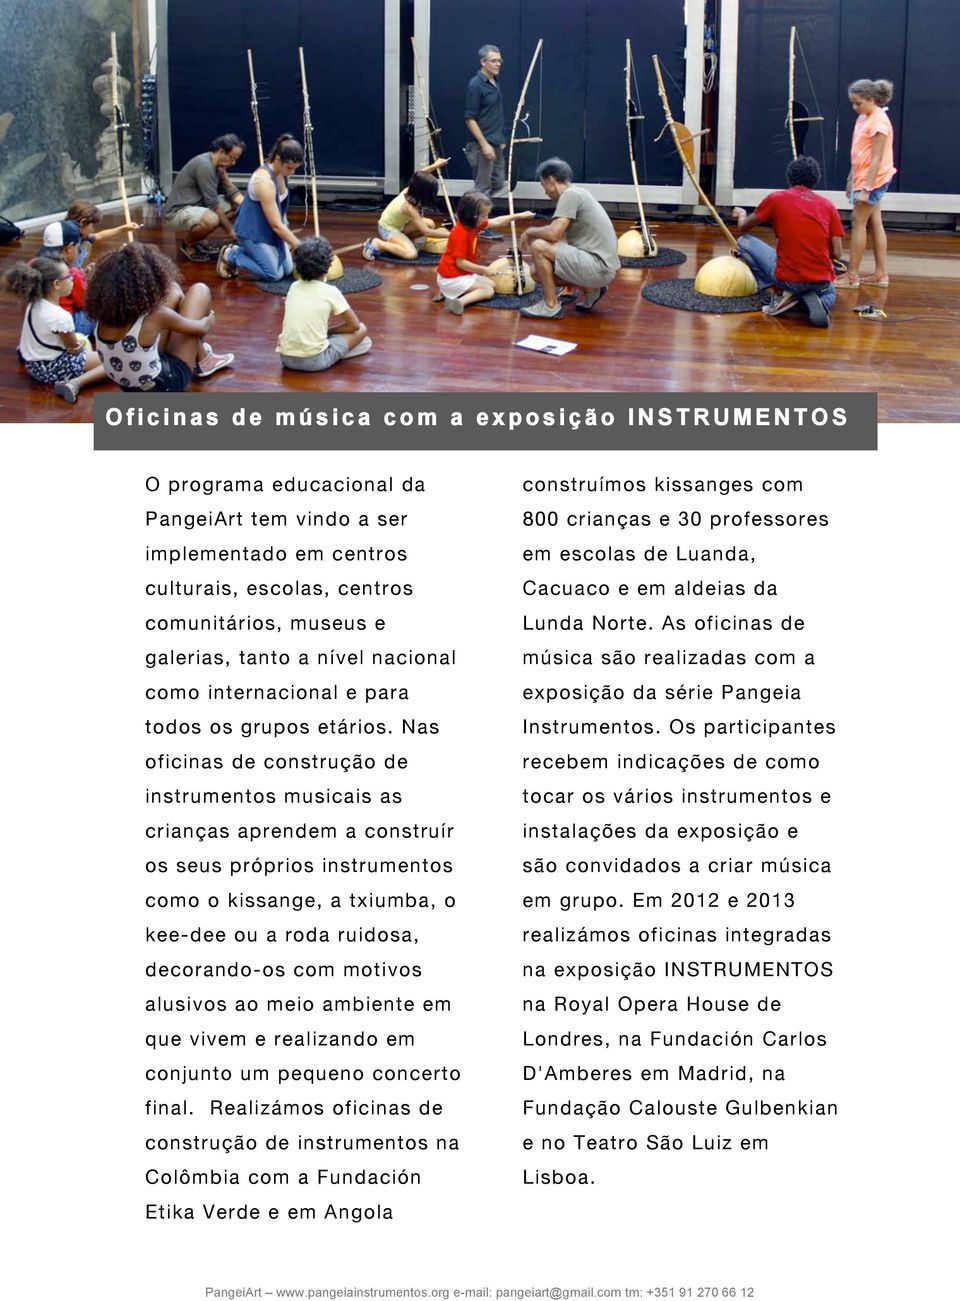 Nas oficinas de construção de instrumentos musicais as crianças aprendem a construír os seus próprios instrumentos como o kissange, a txiumba, o kee-dee ou a roda ruidosa, decorando-os com motivos